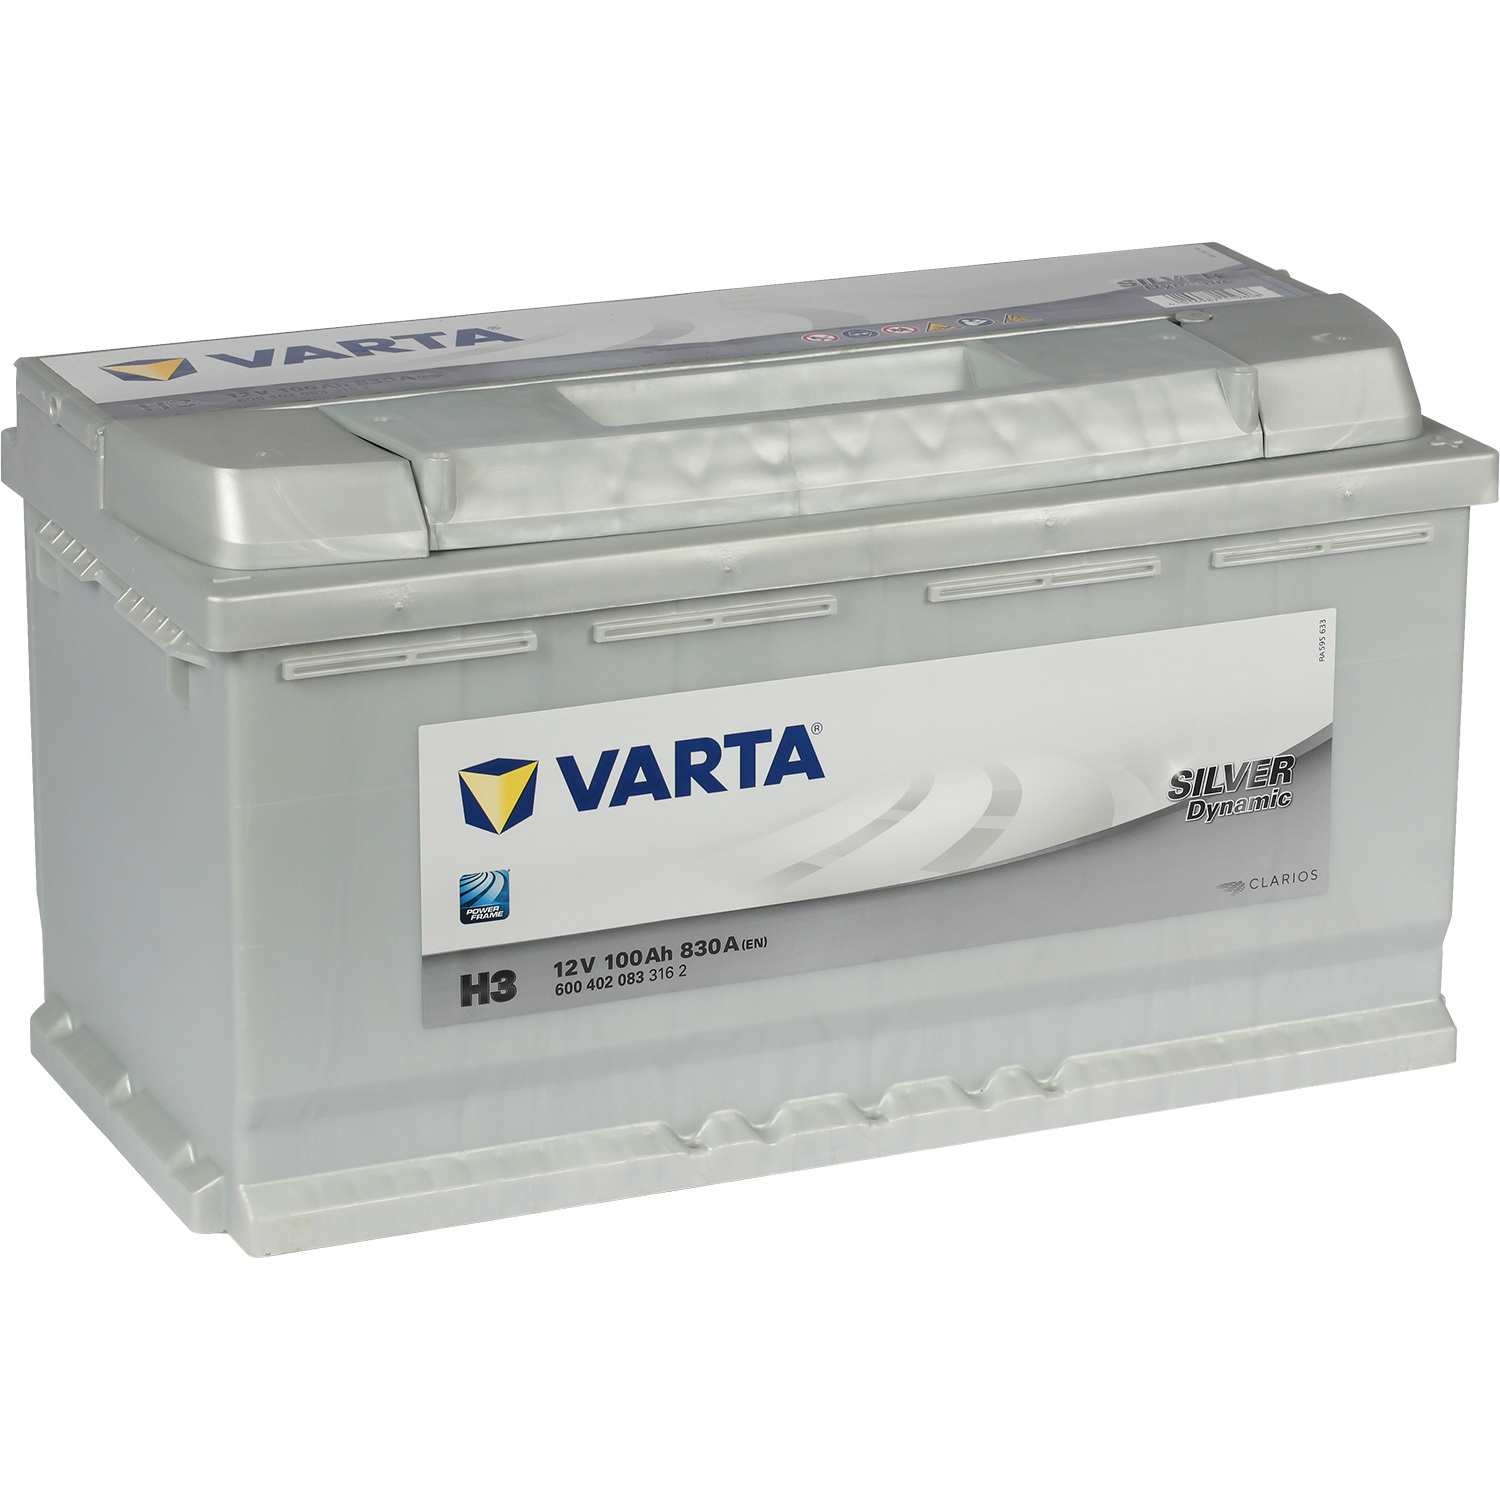 Varta Автомобильный аккумулятор Varta Silver Dynamic H3 100 Ач обратная полярность L5 цена и фото